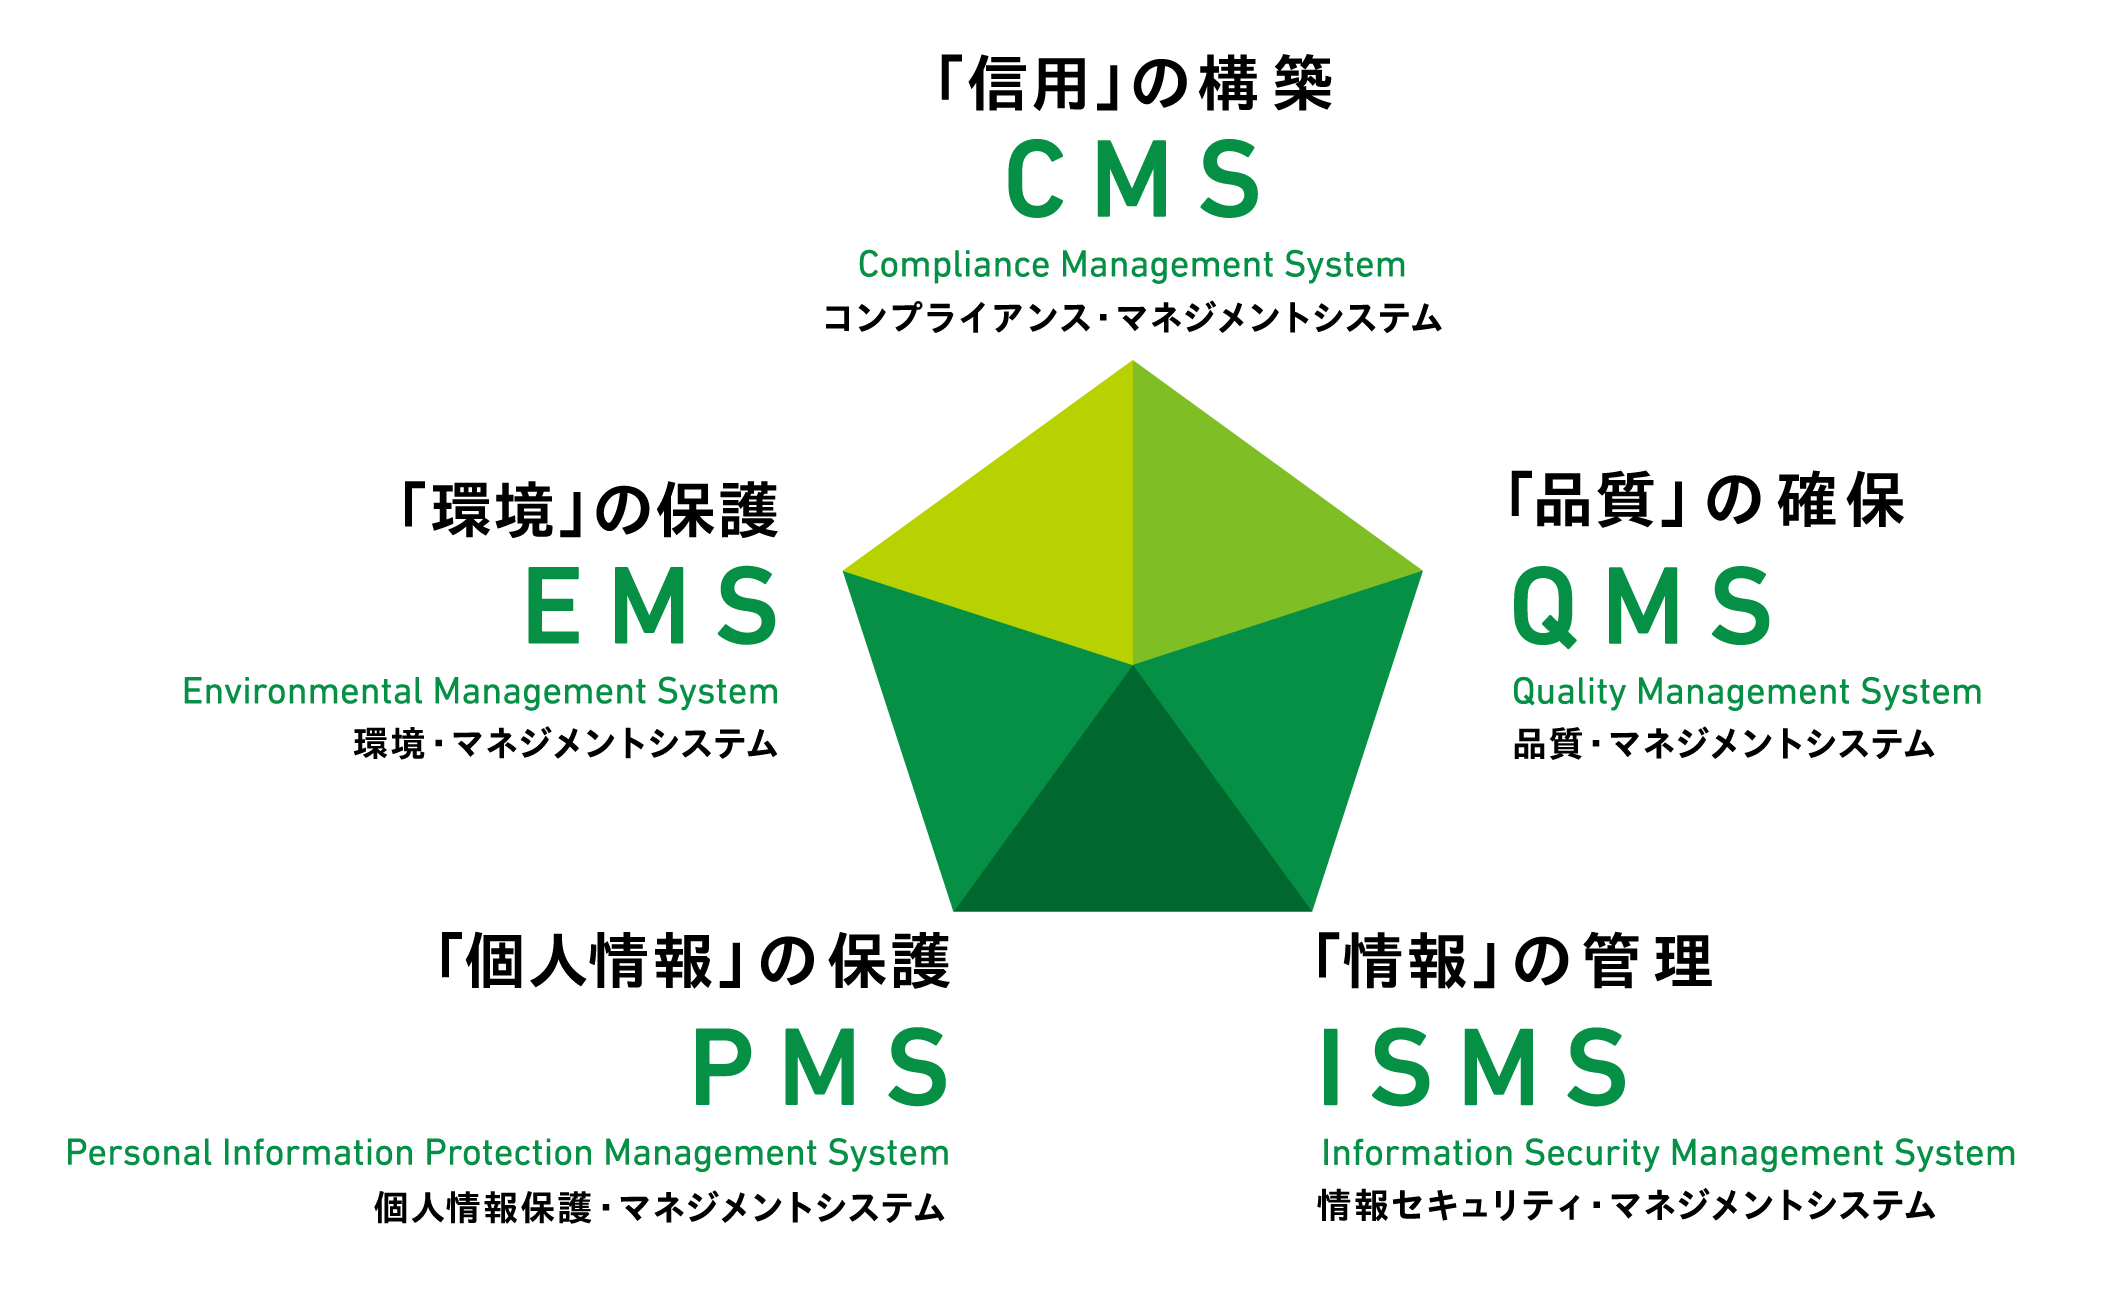 「信用」の構築CMS コンプライアンス・マネジメントシステム 「品質」の確保QMS 品質・マネジメントシステム 「個人情報」の保護PMS 個人情報保護・マネジメントシステム 「情報」の管理ISMS 情報セキュリティ・マネジメントシステム 「環境」の保護EMS 環境・マネジメントシステム